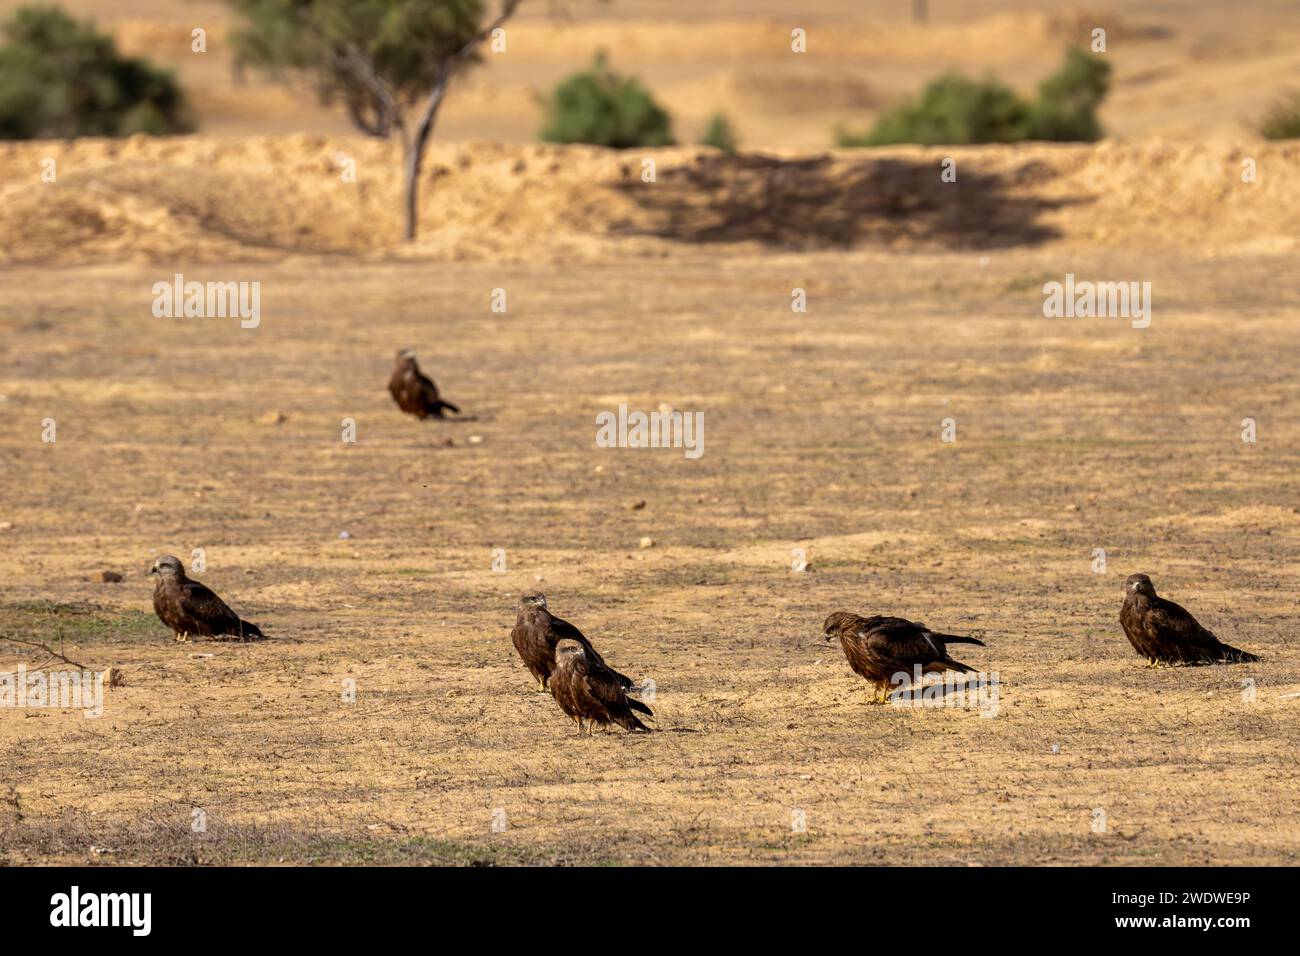 Cerf-volant noir (Milvus migrans) perché sur le sol photographié en Israël en décembre le cerf-volant noir (Milvus migrans) est un oiseau de proie i de taille moyenne Banque D'Images